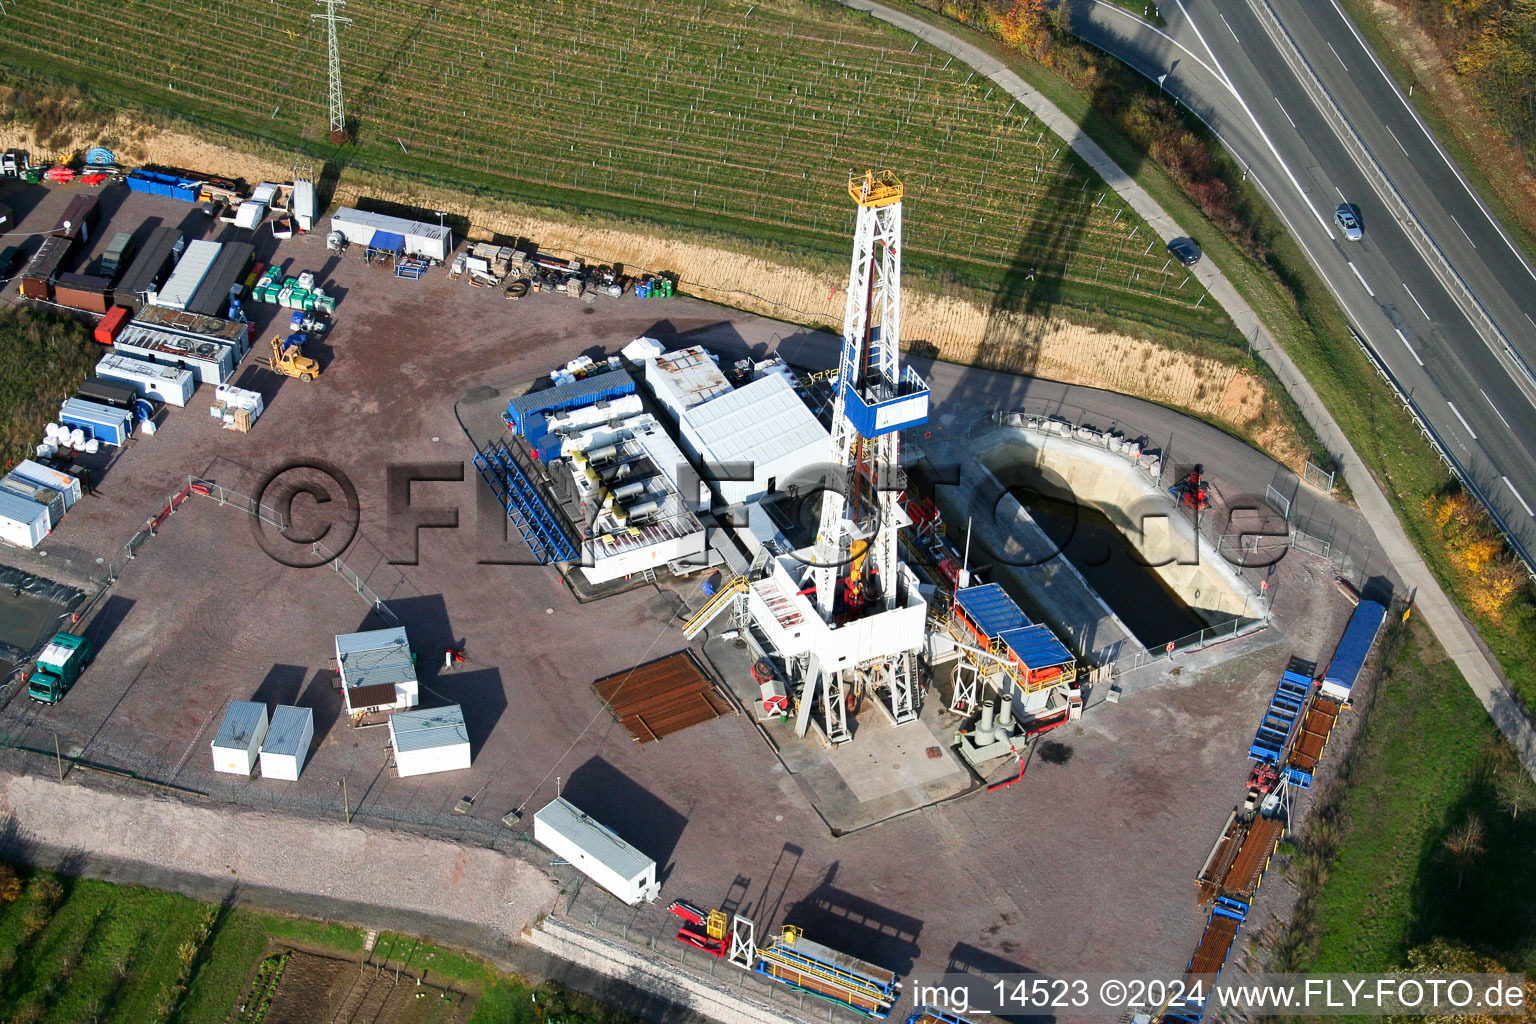 Luftbild von Bohrturm und Baustelle für ein Geothermiekraftwerk in Insheim im Bundesland Rheinland-Pfalz, Deutschland